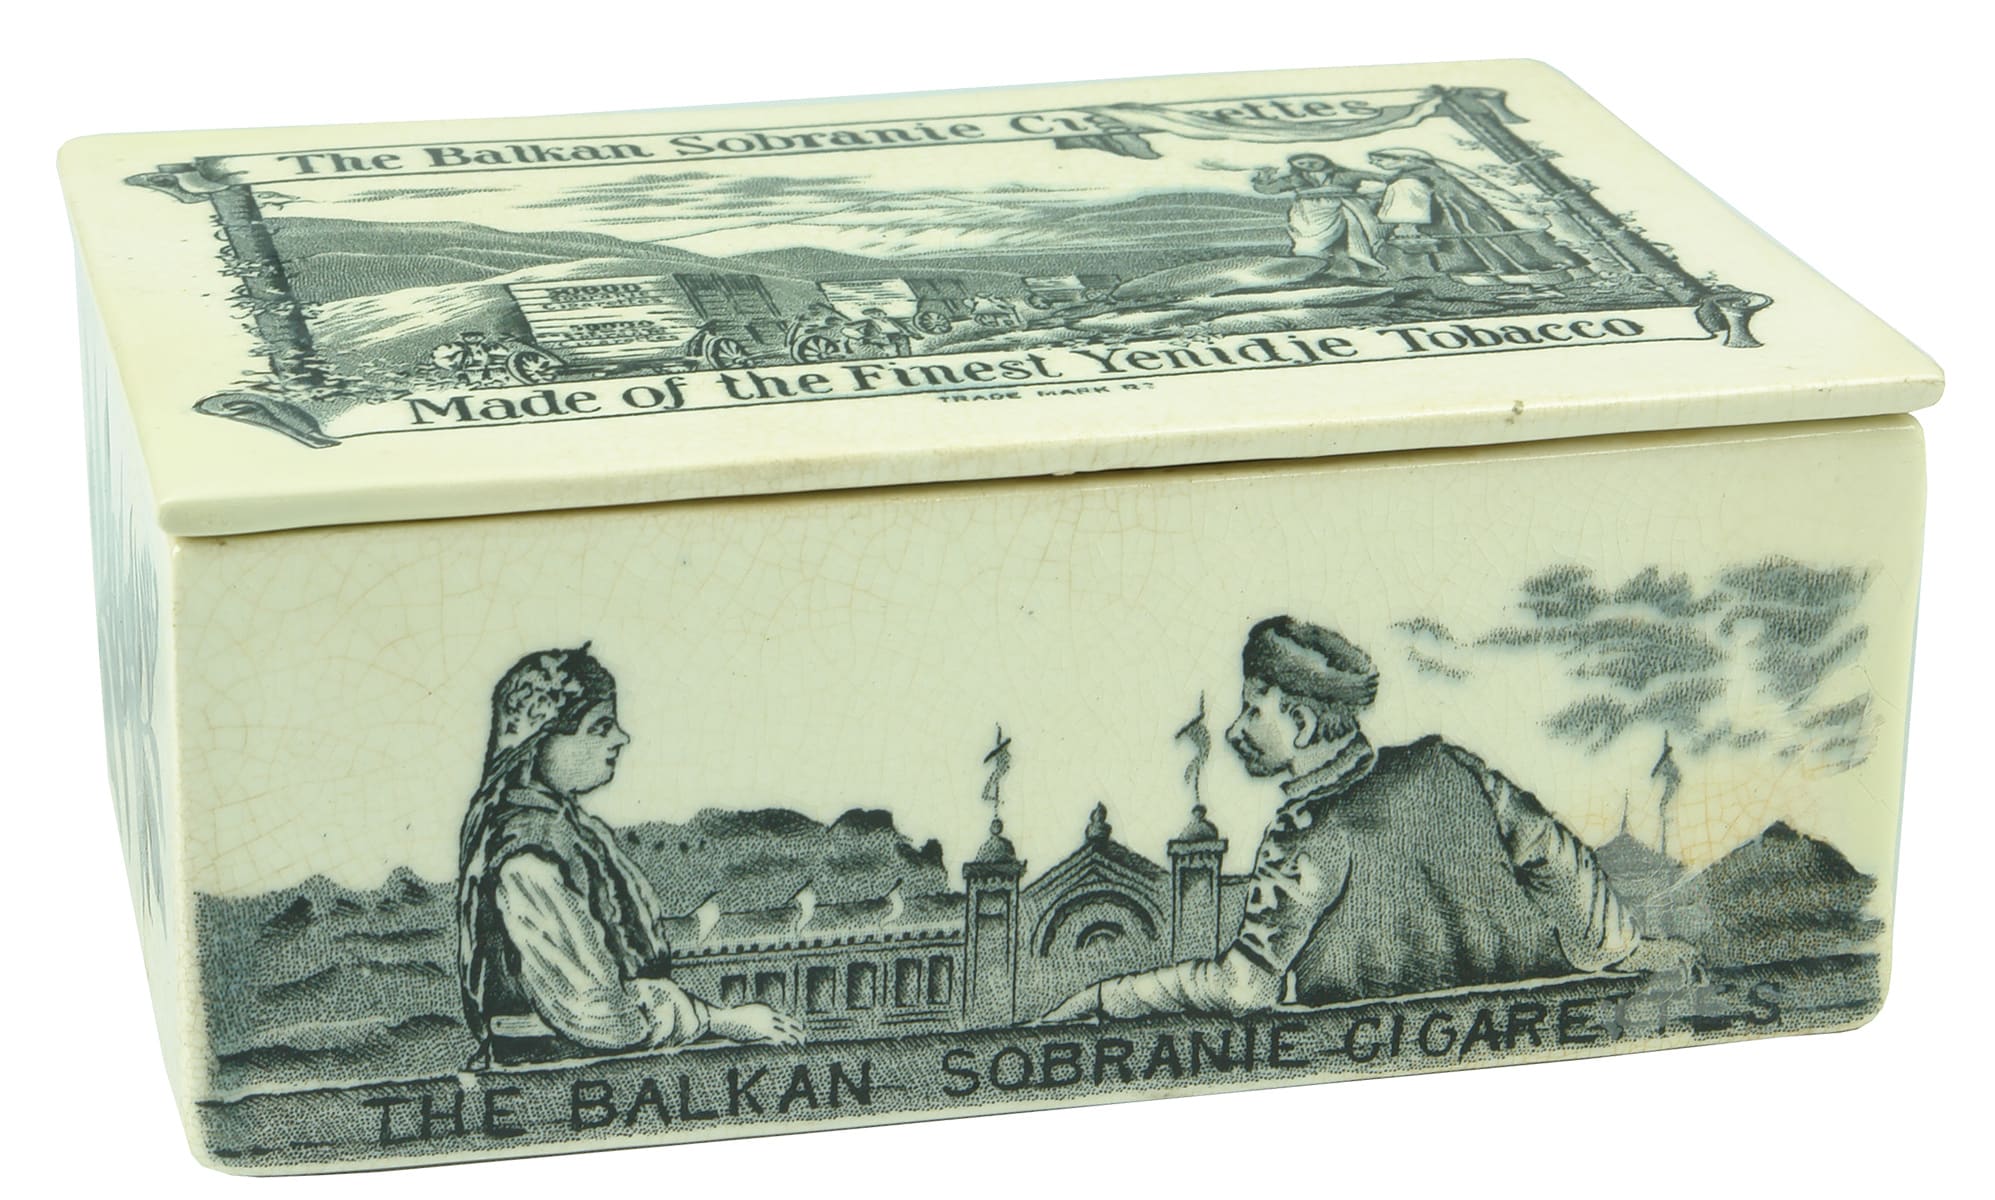 Balkan Sobranie Ceramic Cigarette Case